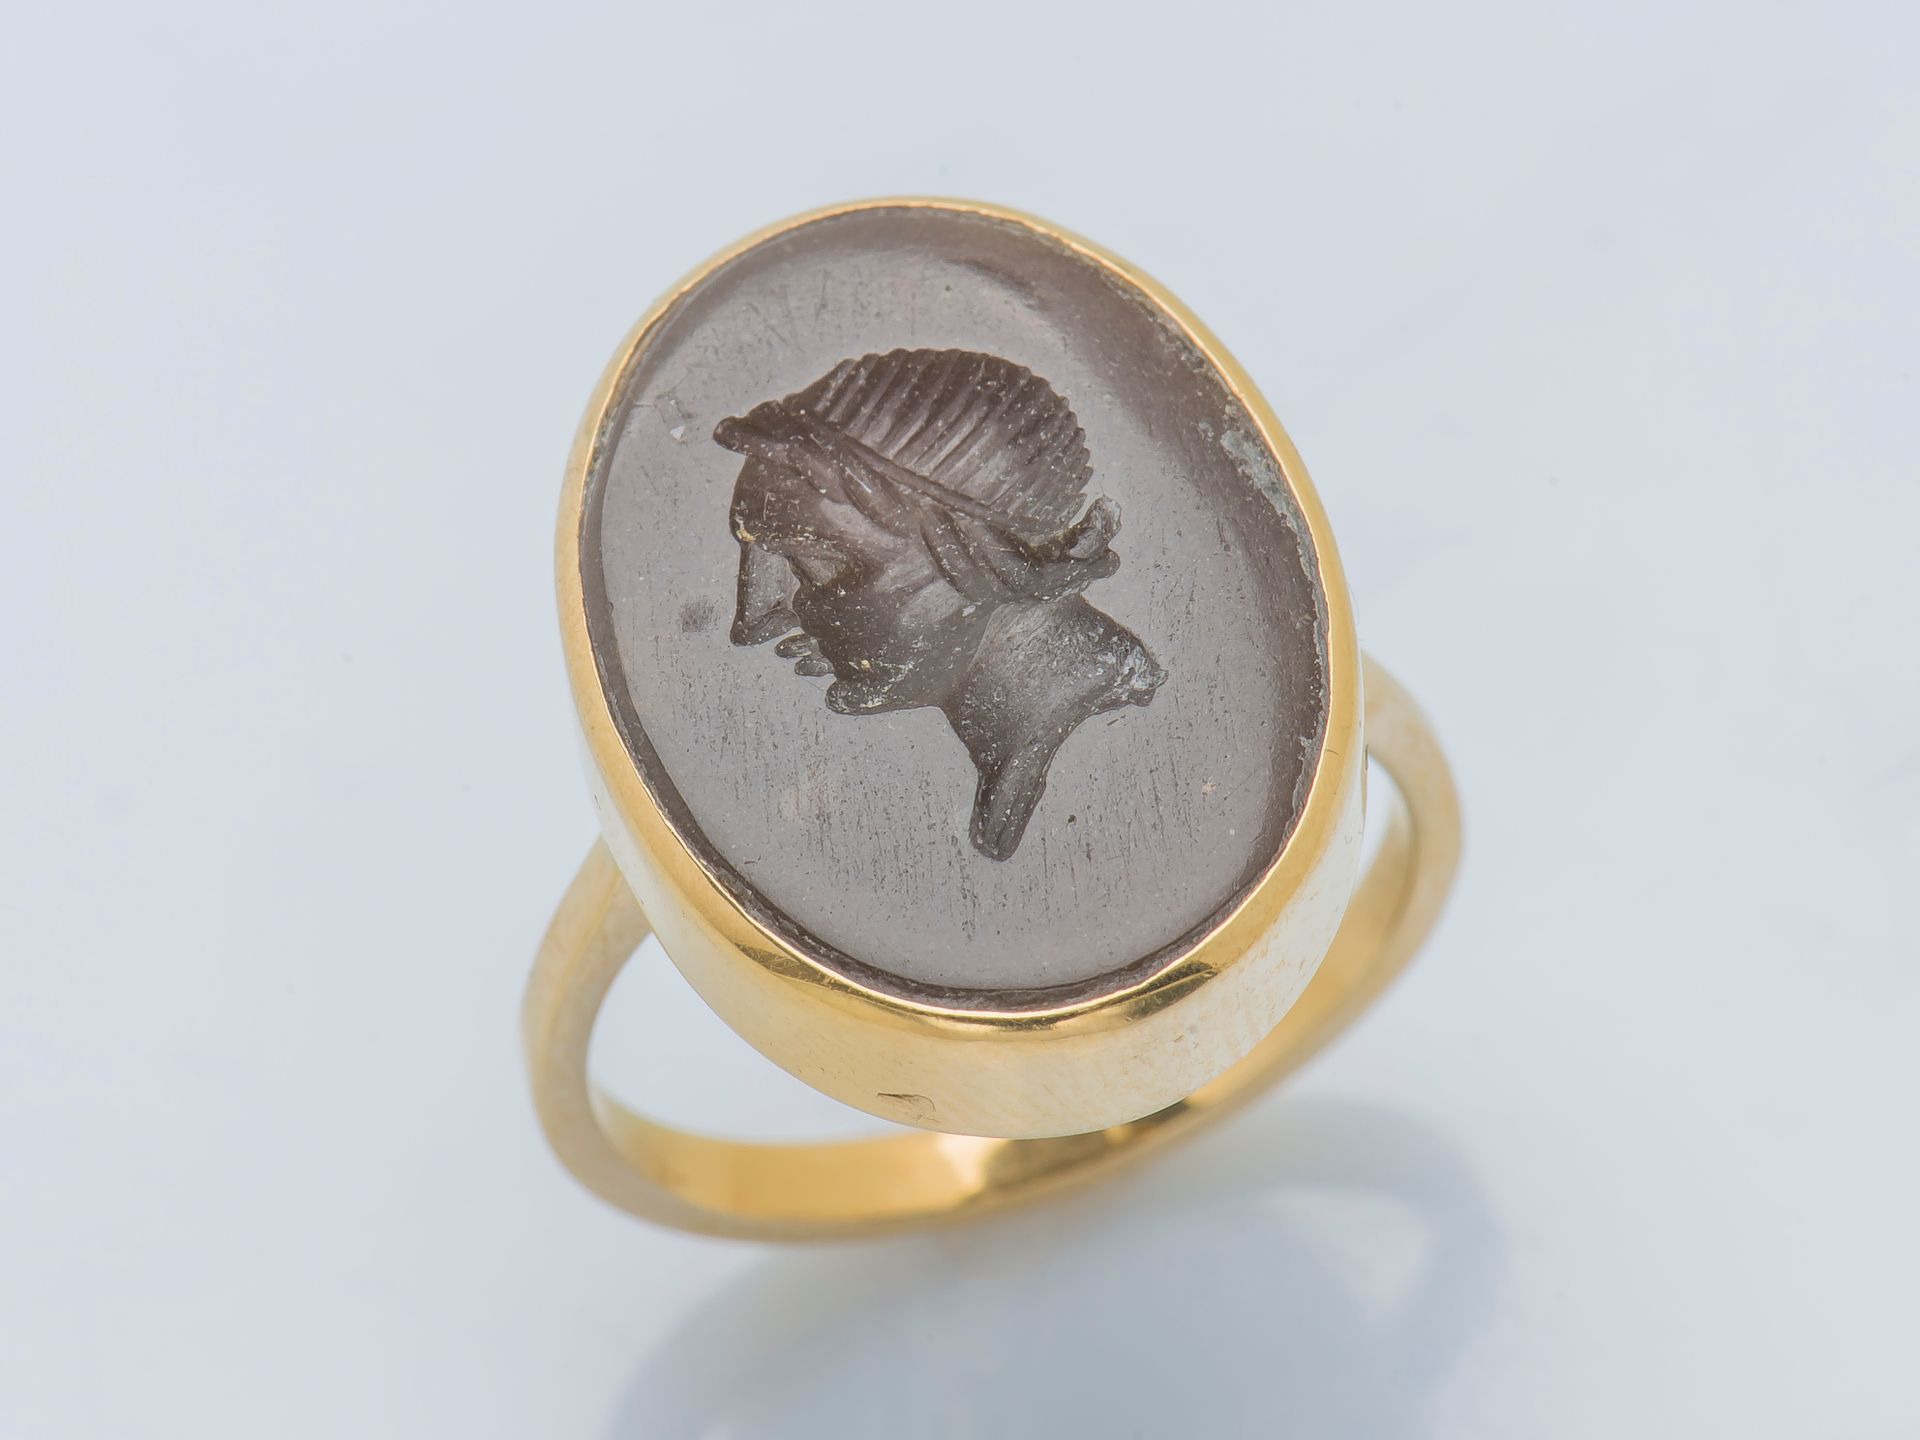 Null 一枚18克拉（750‰）的黄金戒指，上面镶嵌着一个椭圆形的硬石凹雕，描绘了一个年轻人的轮廓。法国作品，金匠的标记难以辨认。

手指大小：52 毛重：4&hellip;